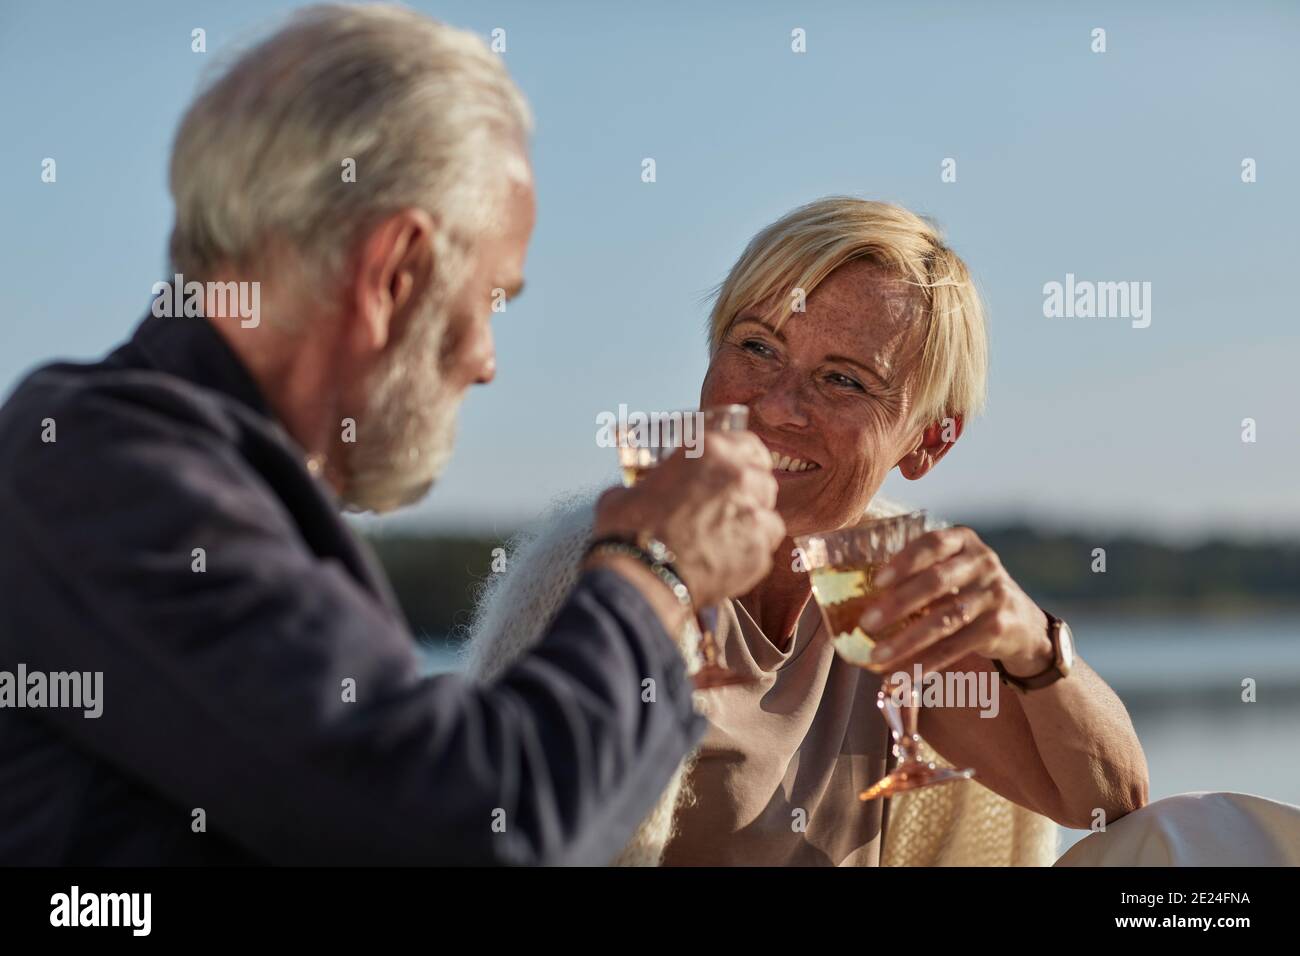 Lächelndes Paar, das Wein trinkt Stockfoto